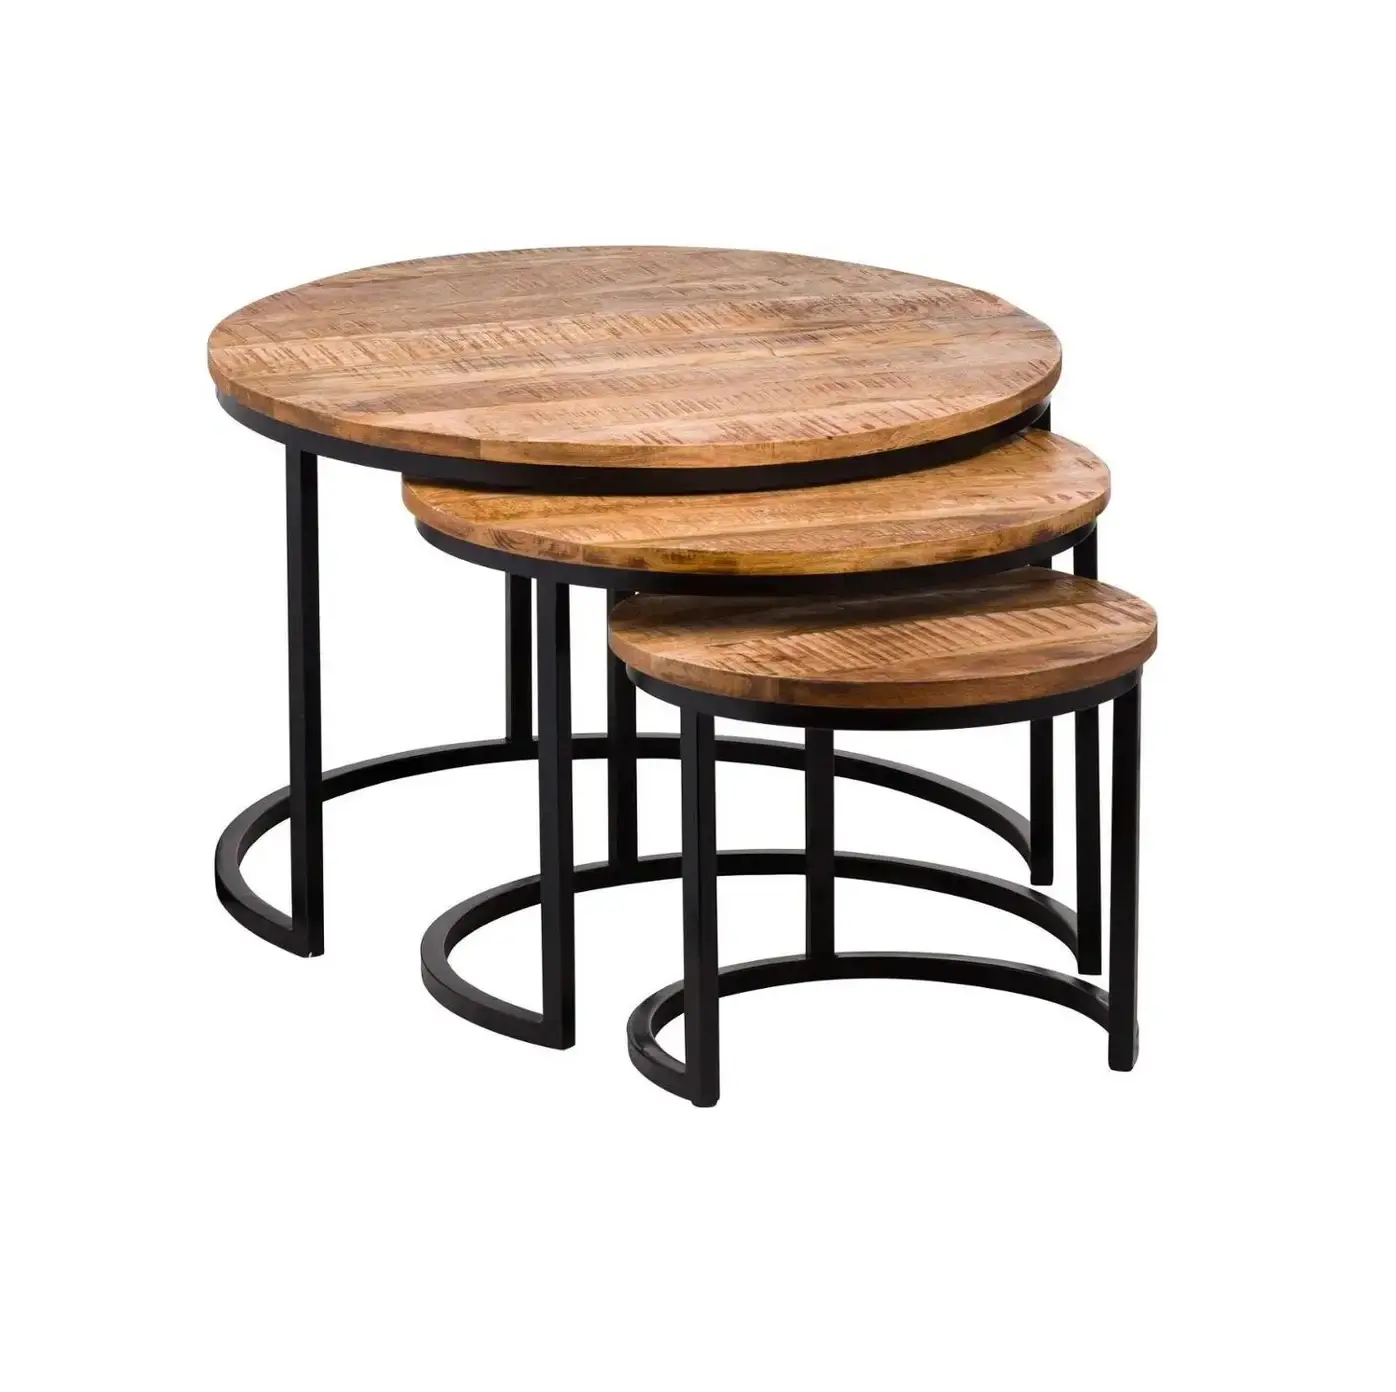 Ensemble de 3 tables basses rondes en aluminium brut antique doré pour le salon et la chambre à coucher, meilleures ventes de tables d'appoint modernes gigognes